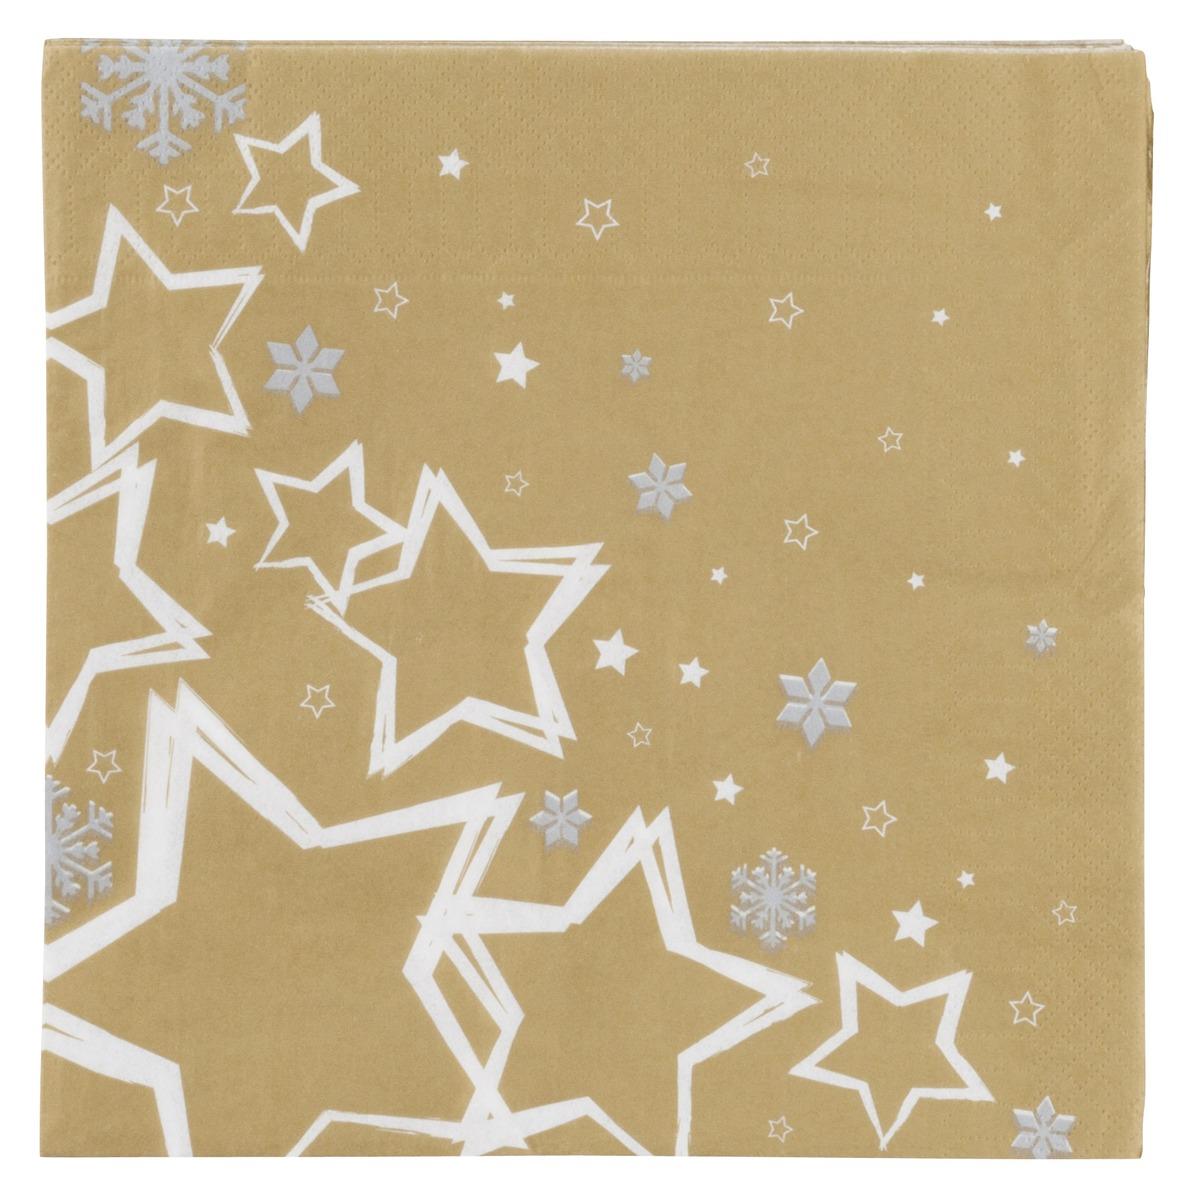 Lot de 20 serviettes en papier imprimé étoiles - 40 x 40 cm - Blanc et or